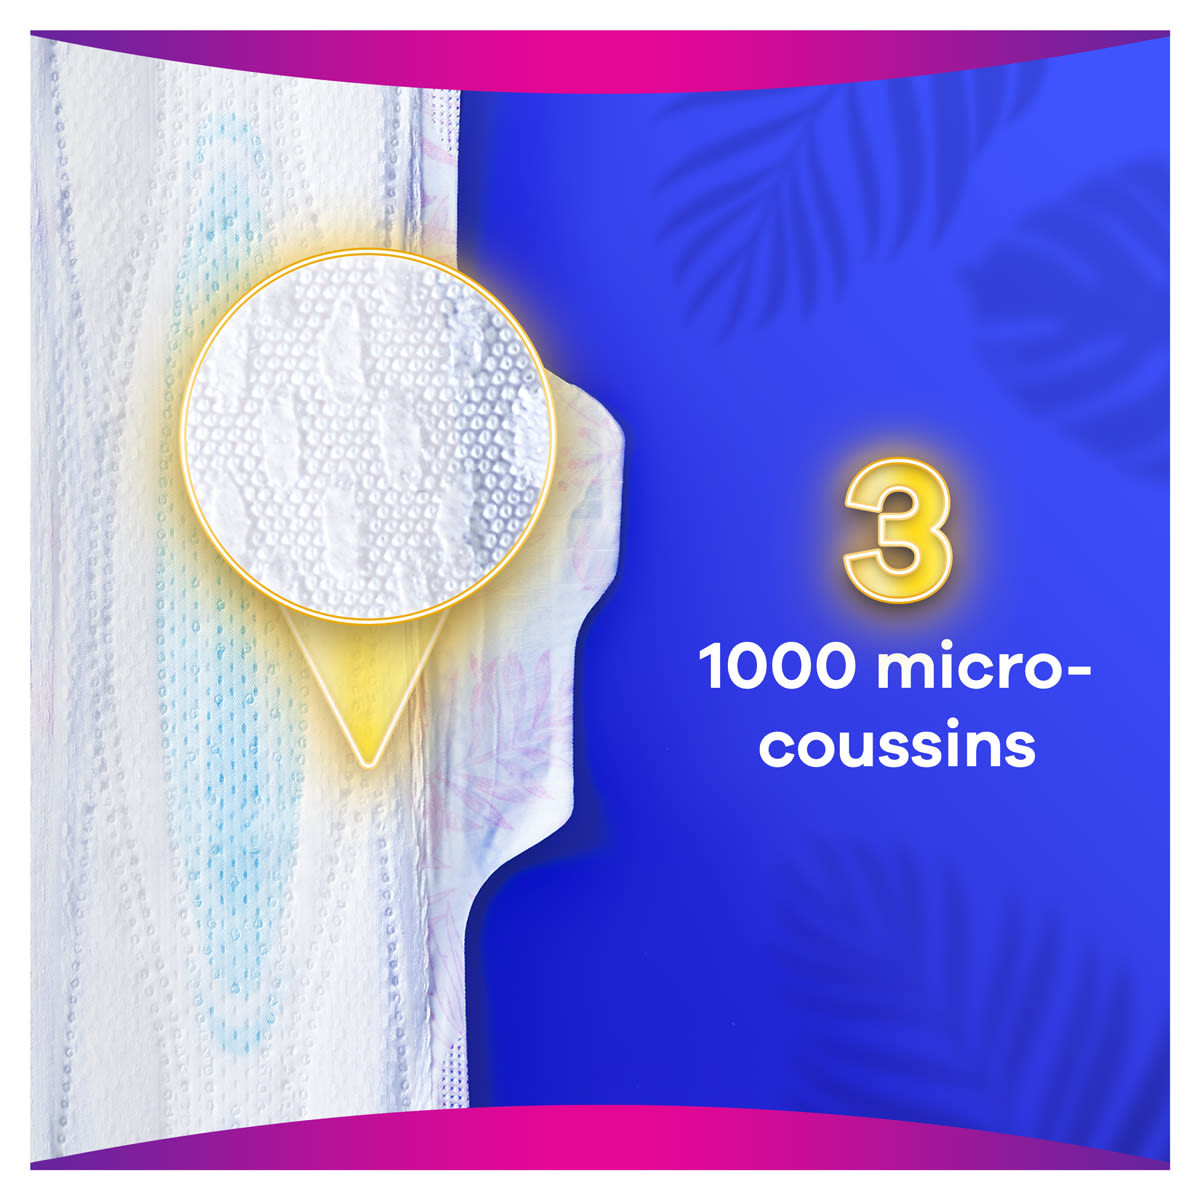 La protection 3D LeakGuard a été conçue pour empêcher les fuites aux bords de la serviette et pour un confort optimal grâce à des milliers de micro-coussins doux